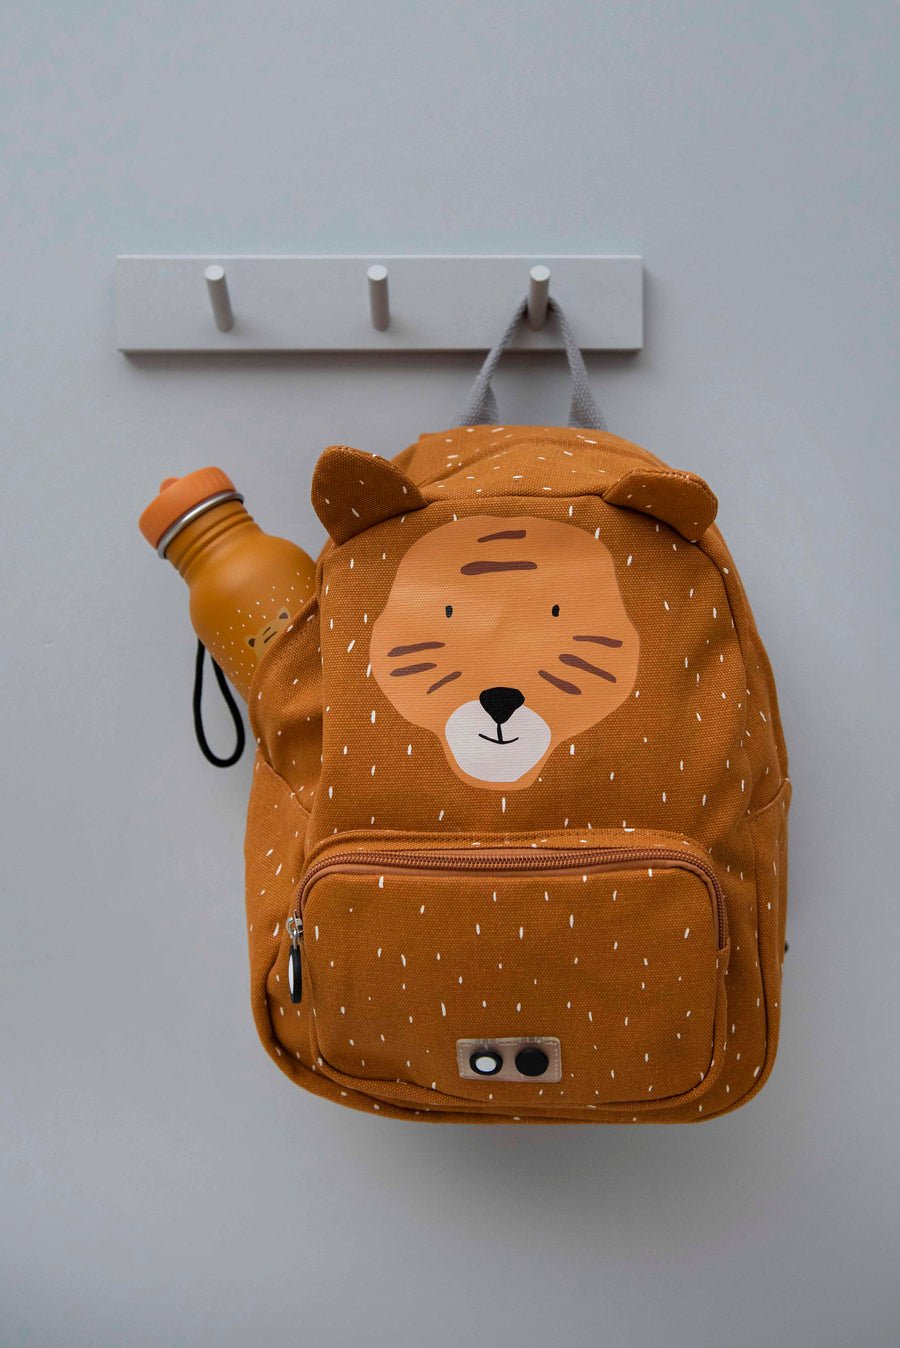 Backpack - Mr. Tiger